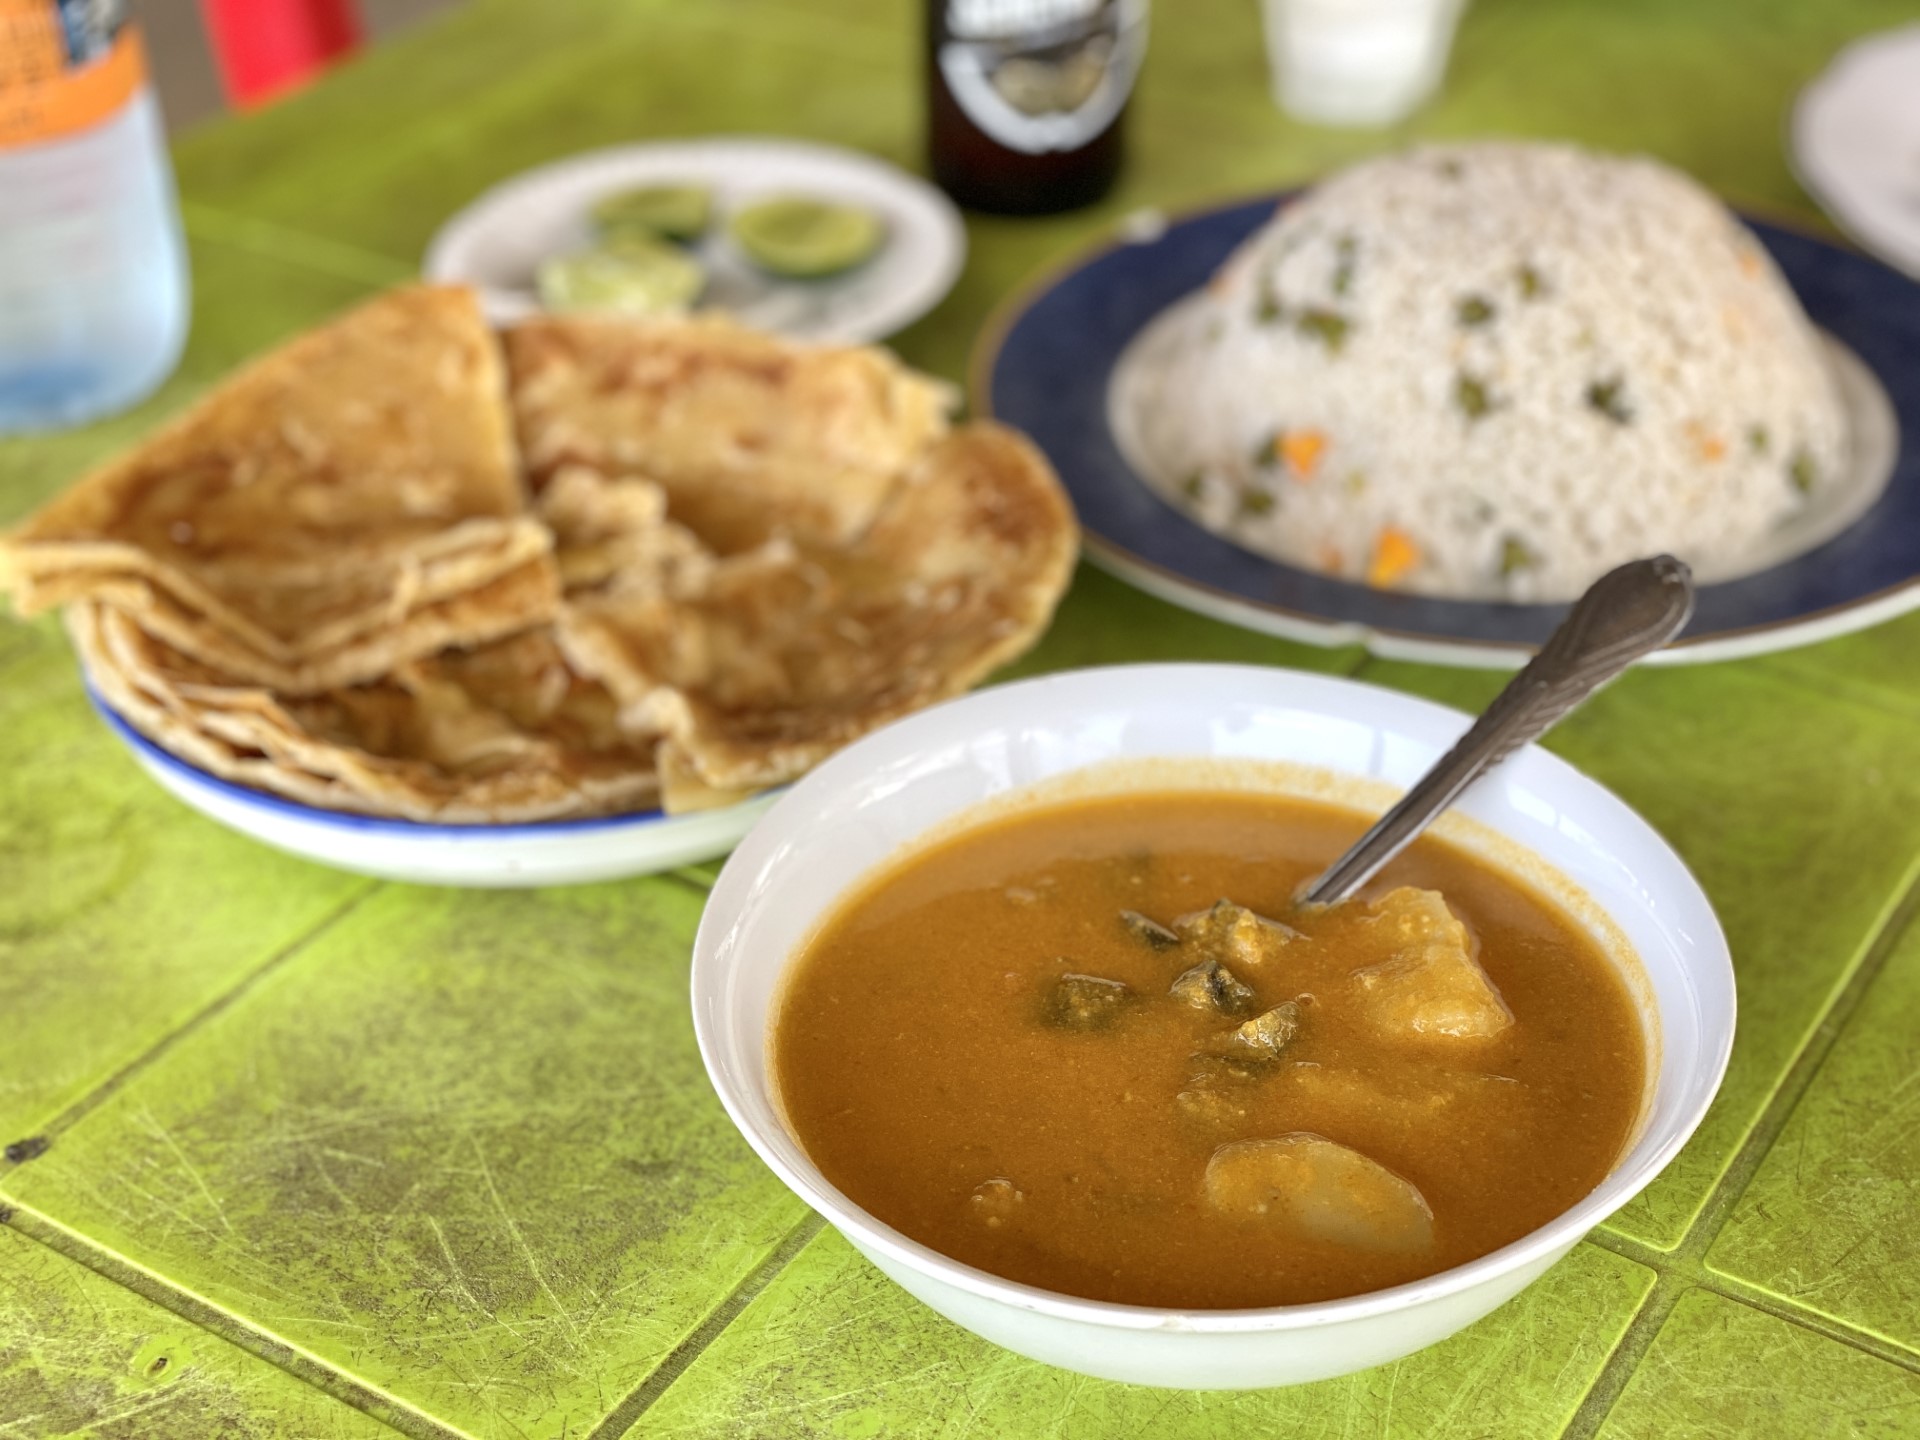 Vegetable curry met chapati en rijst - deze optie kom je heel vaak tegen